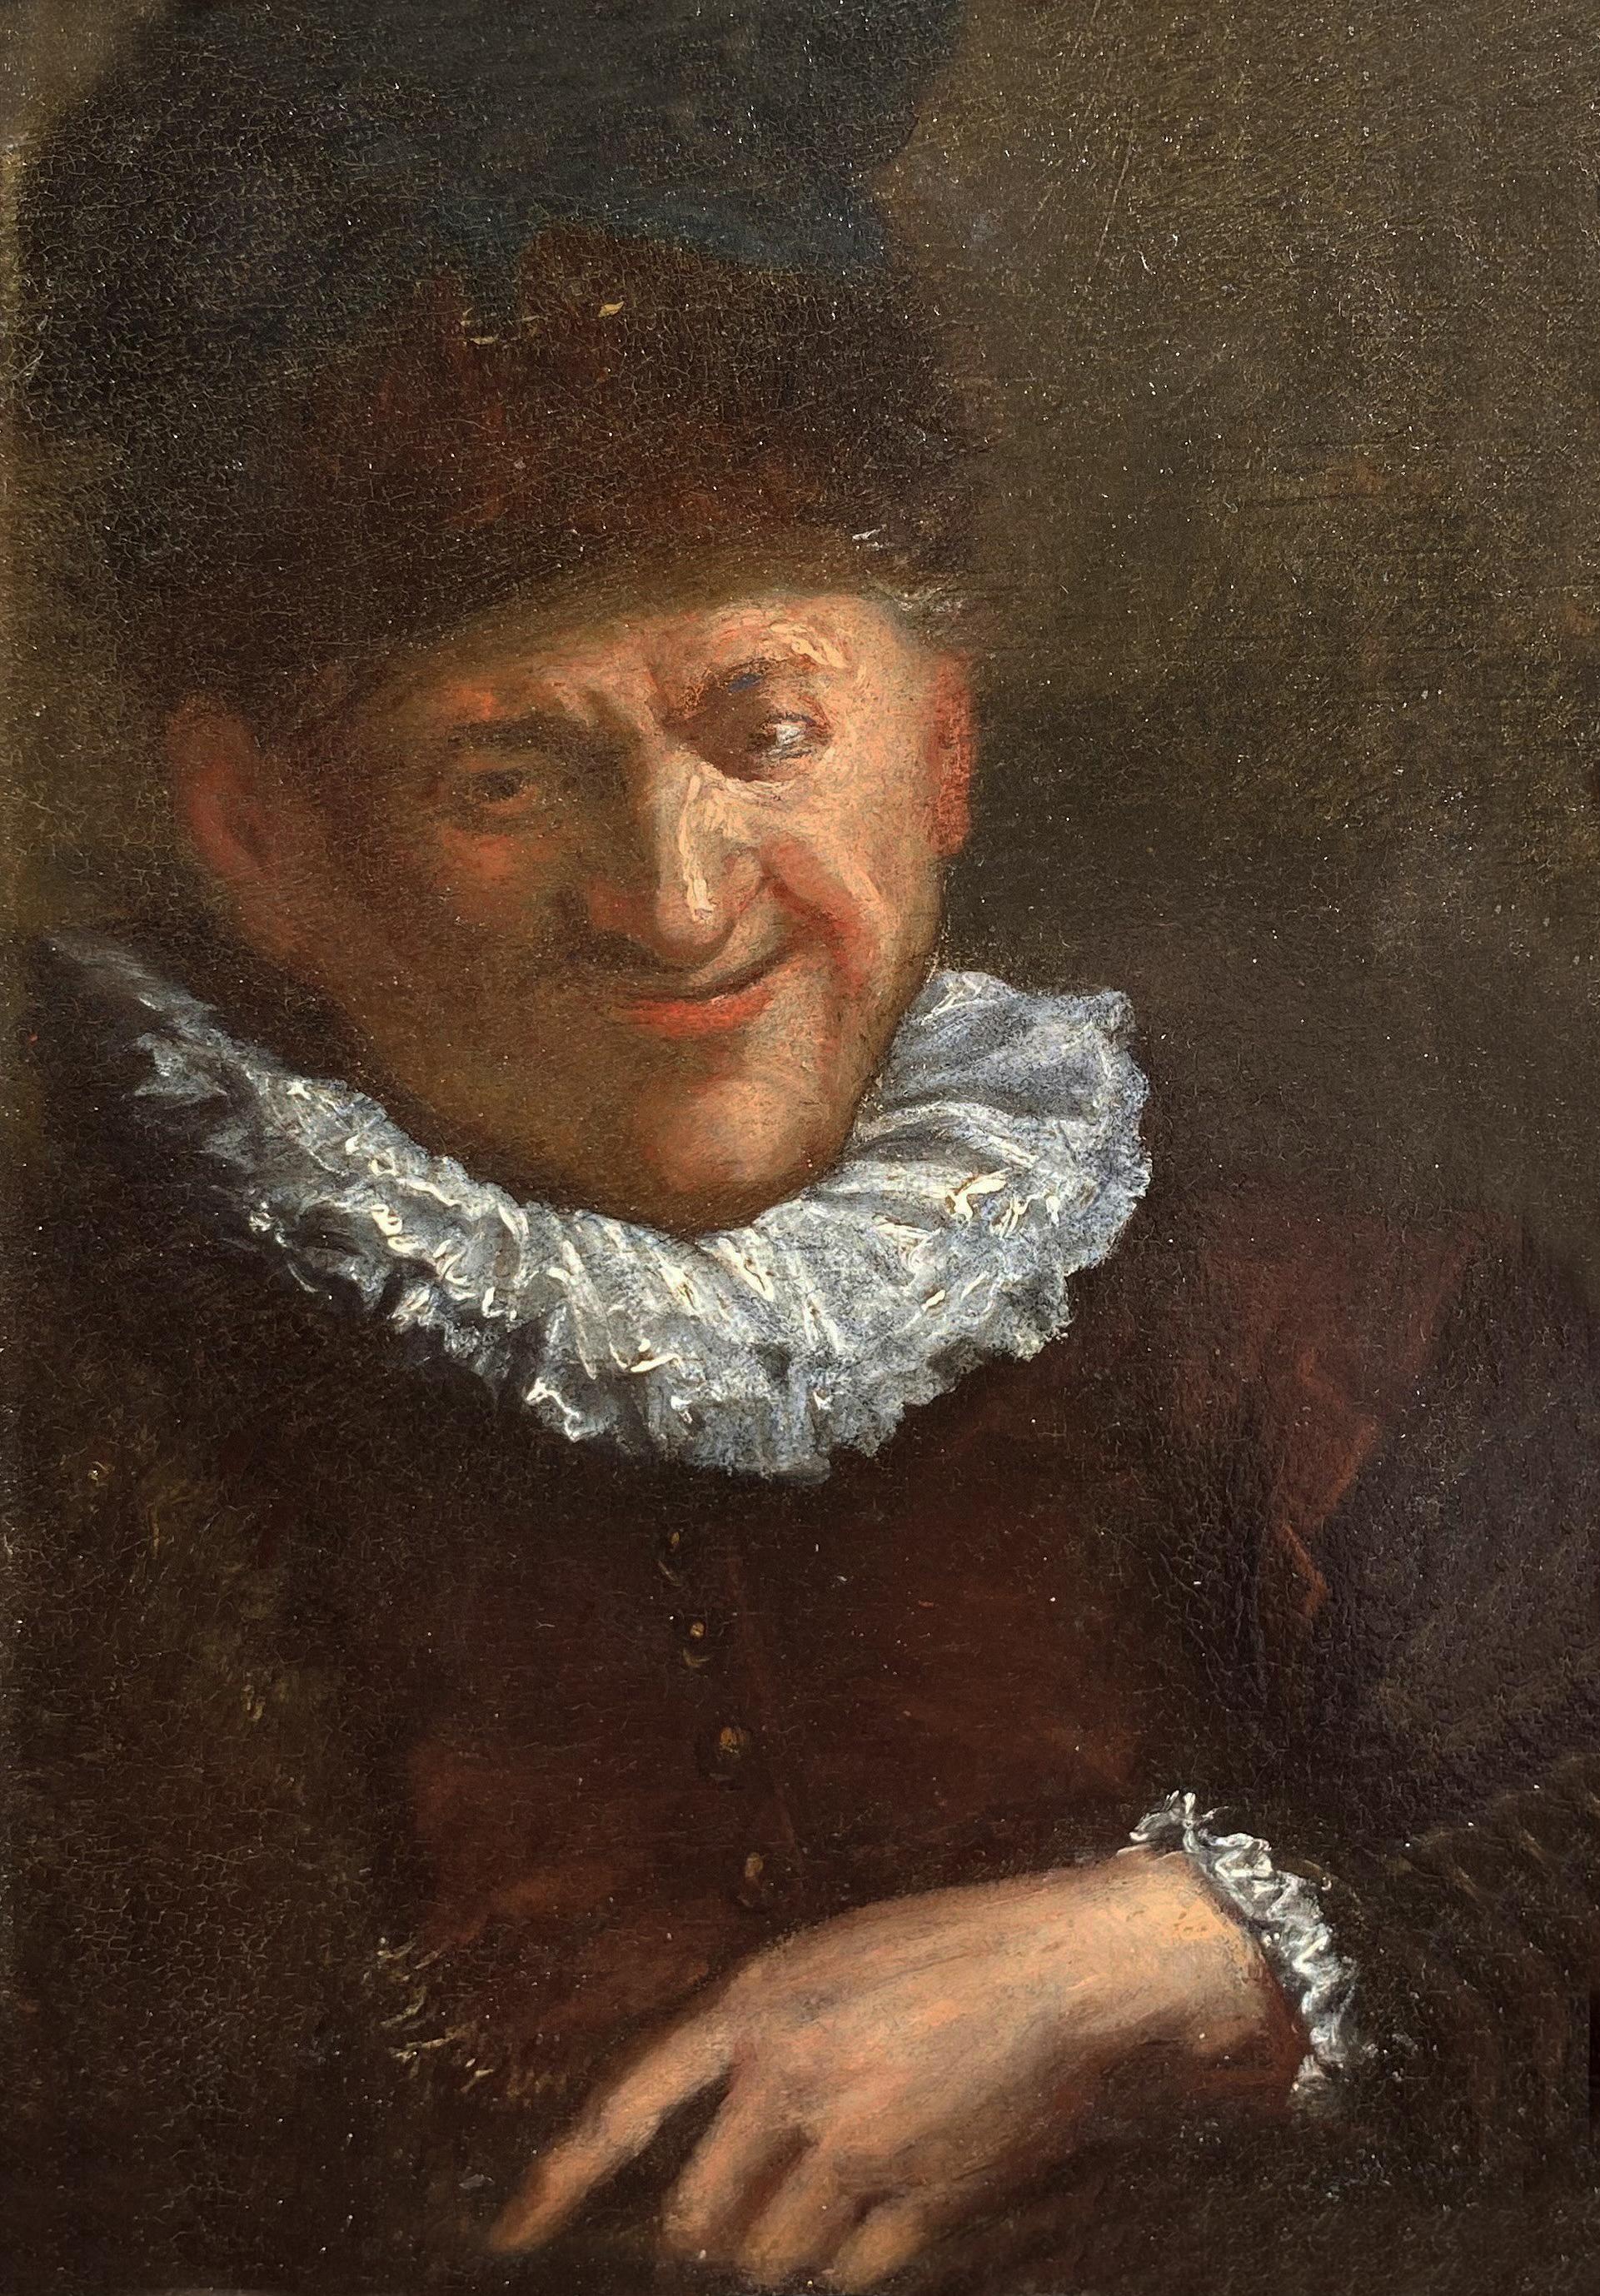 Portrait of a Man, 17th Century Dutch Oil on Panel Portrait